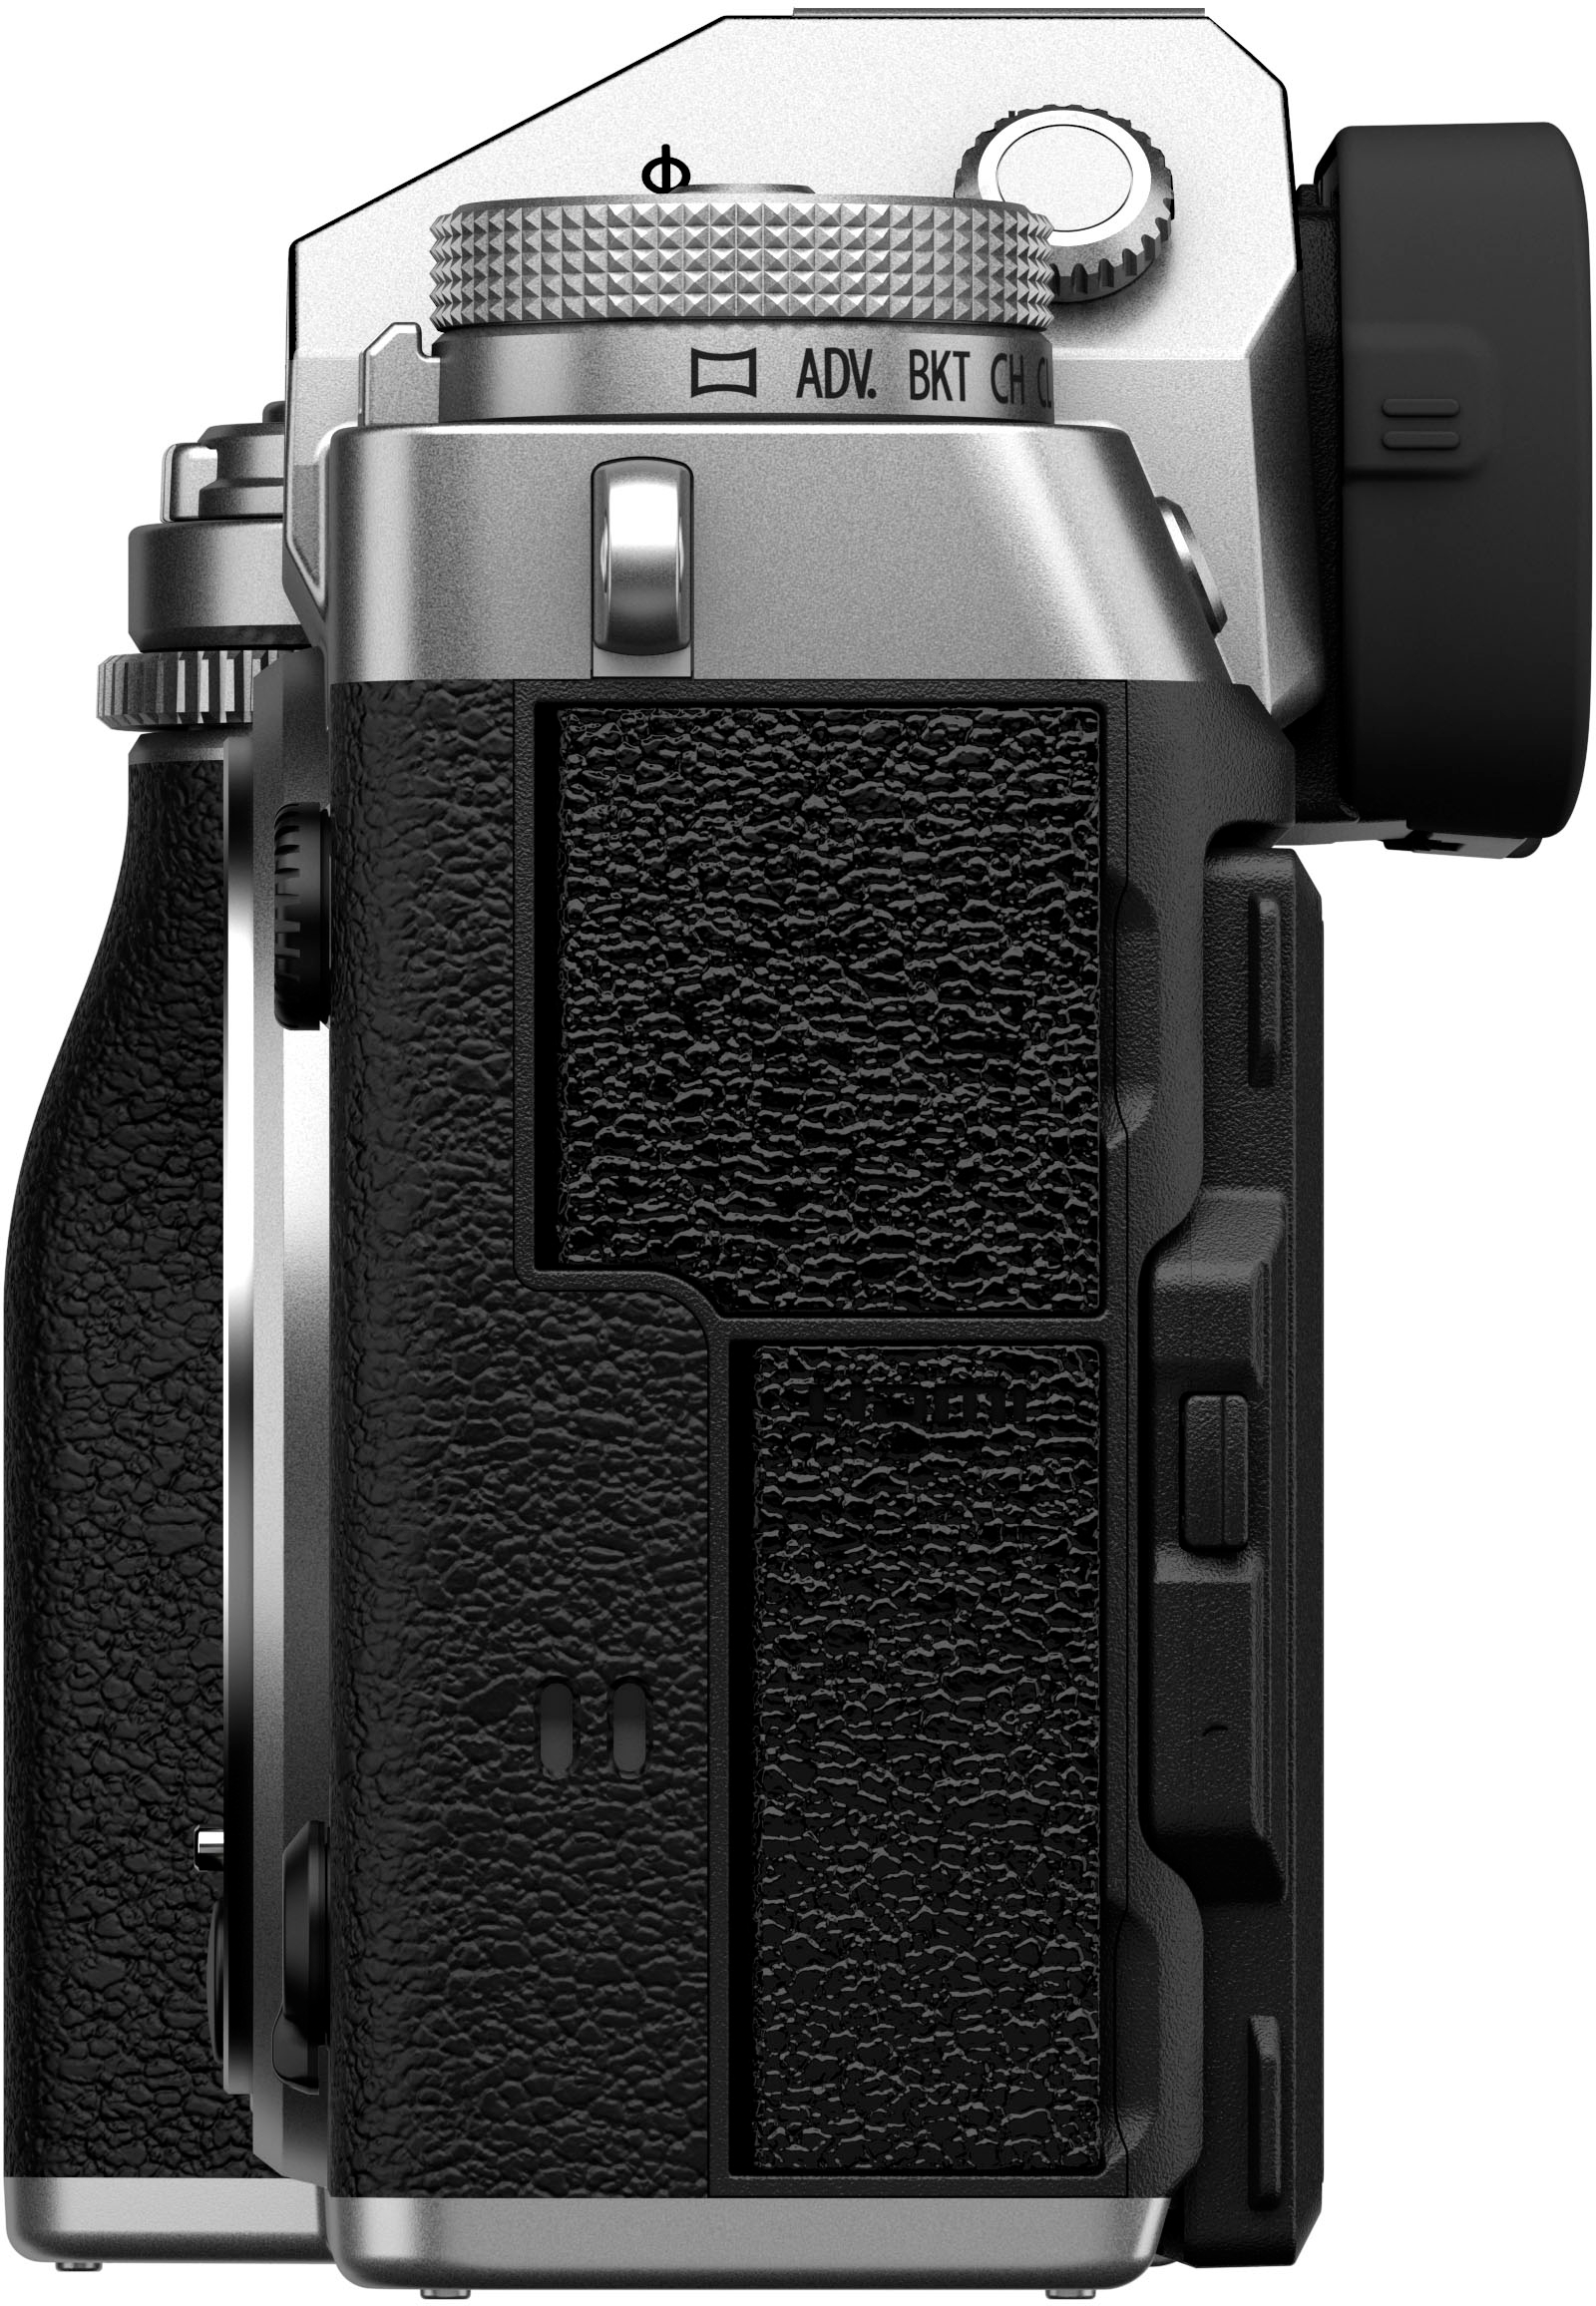 Fujifilm X-T5: Lightweight with 40 megapixels - digitec